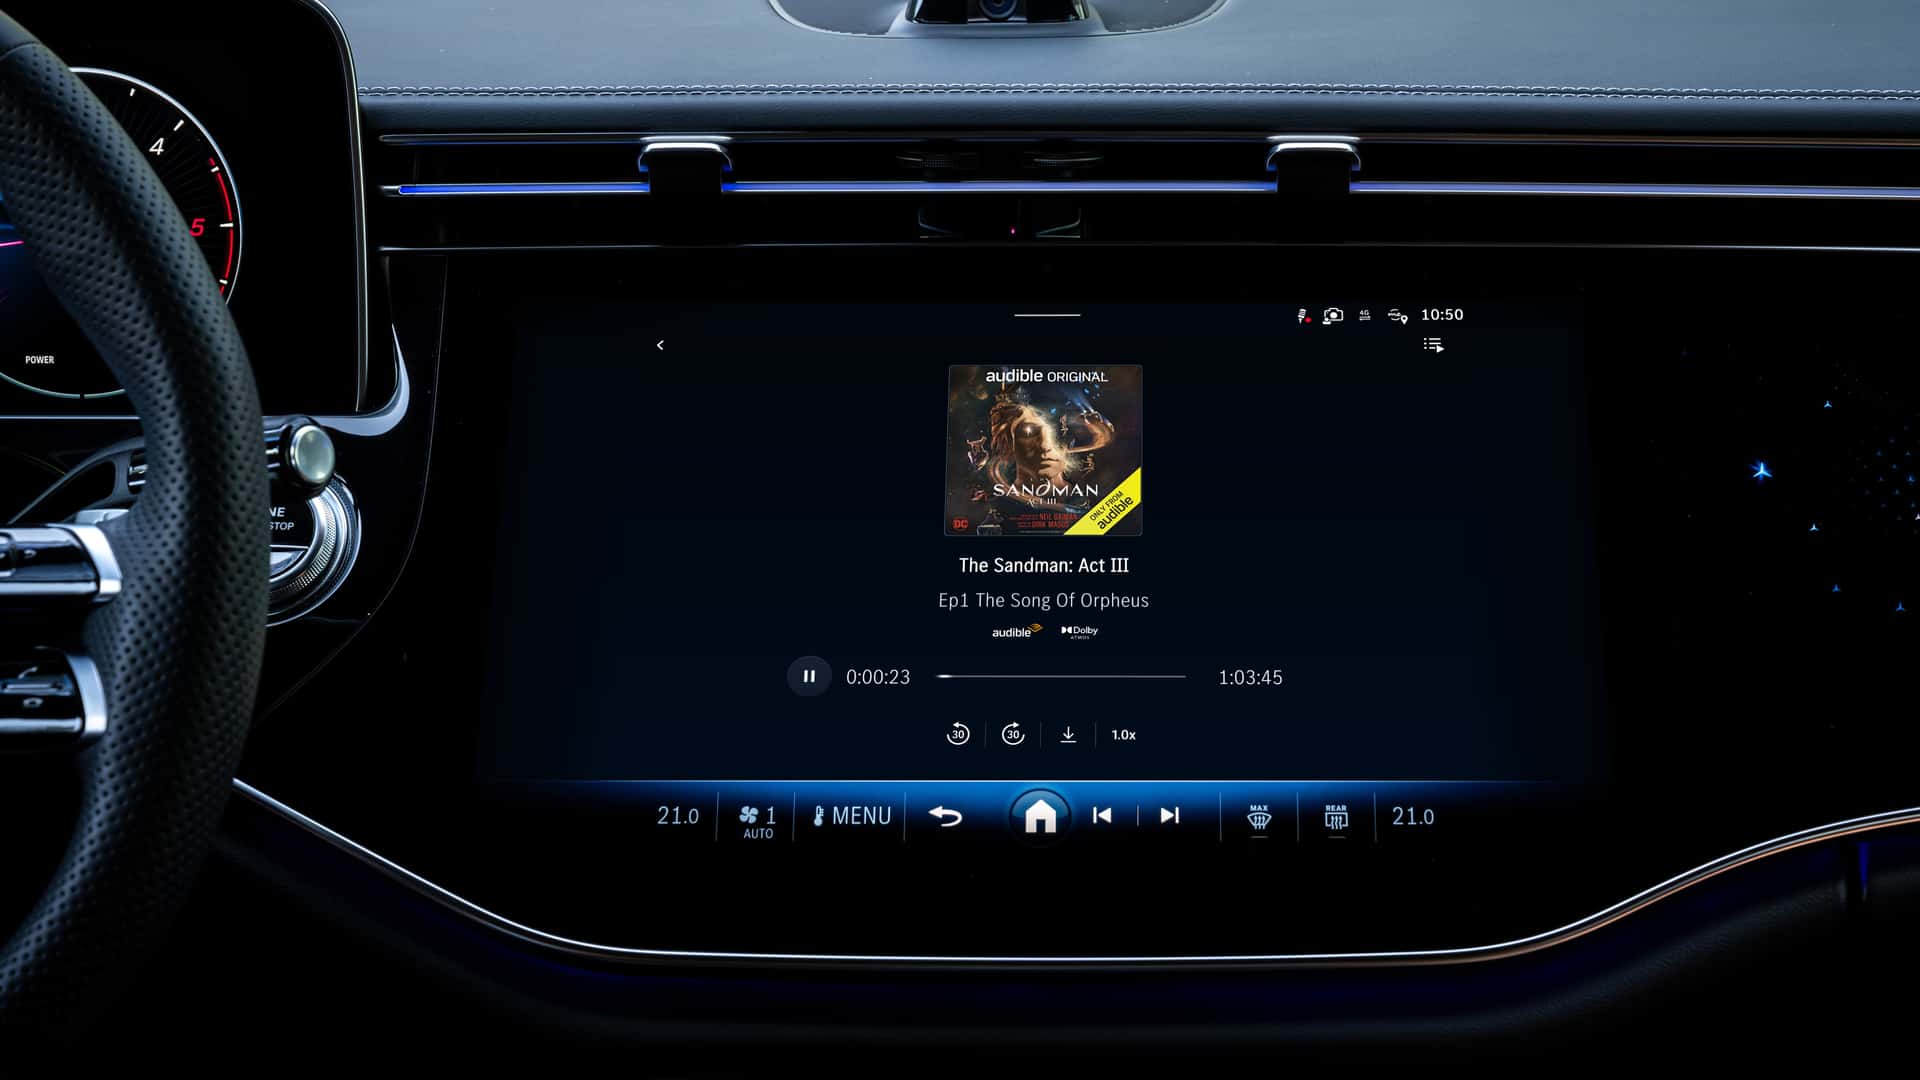 مرسيدس تكشف عن الجيل الجديد من نظام التشغيل لسياراتها بتقنيات مبتكرة جديدة 4